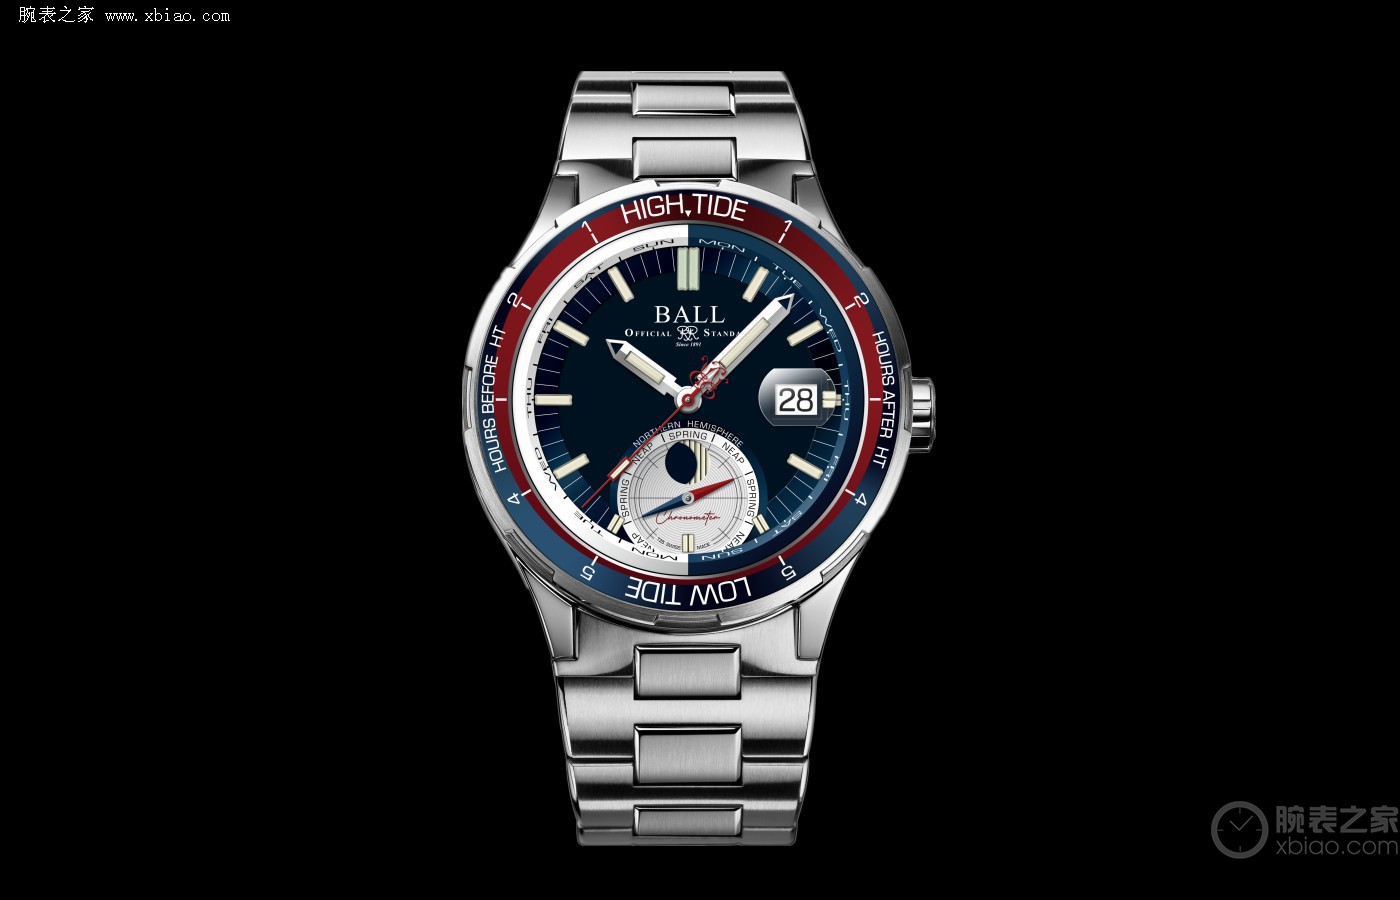 君则敬]潮汐转变一手掌握 品评玻尔急速勇士系列产品深海探索腕表